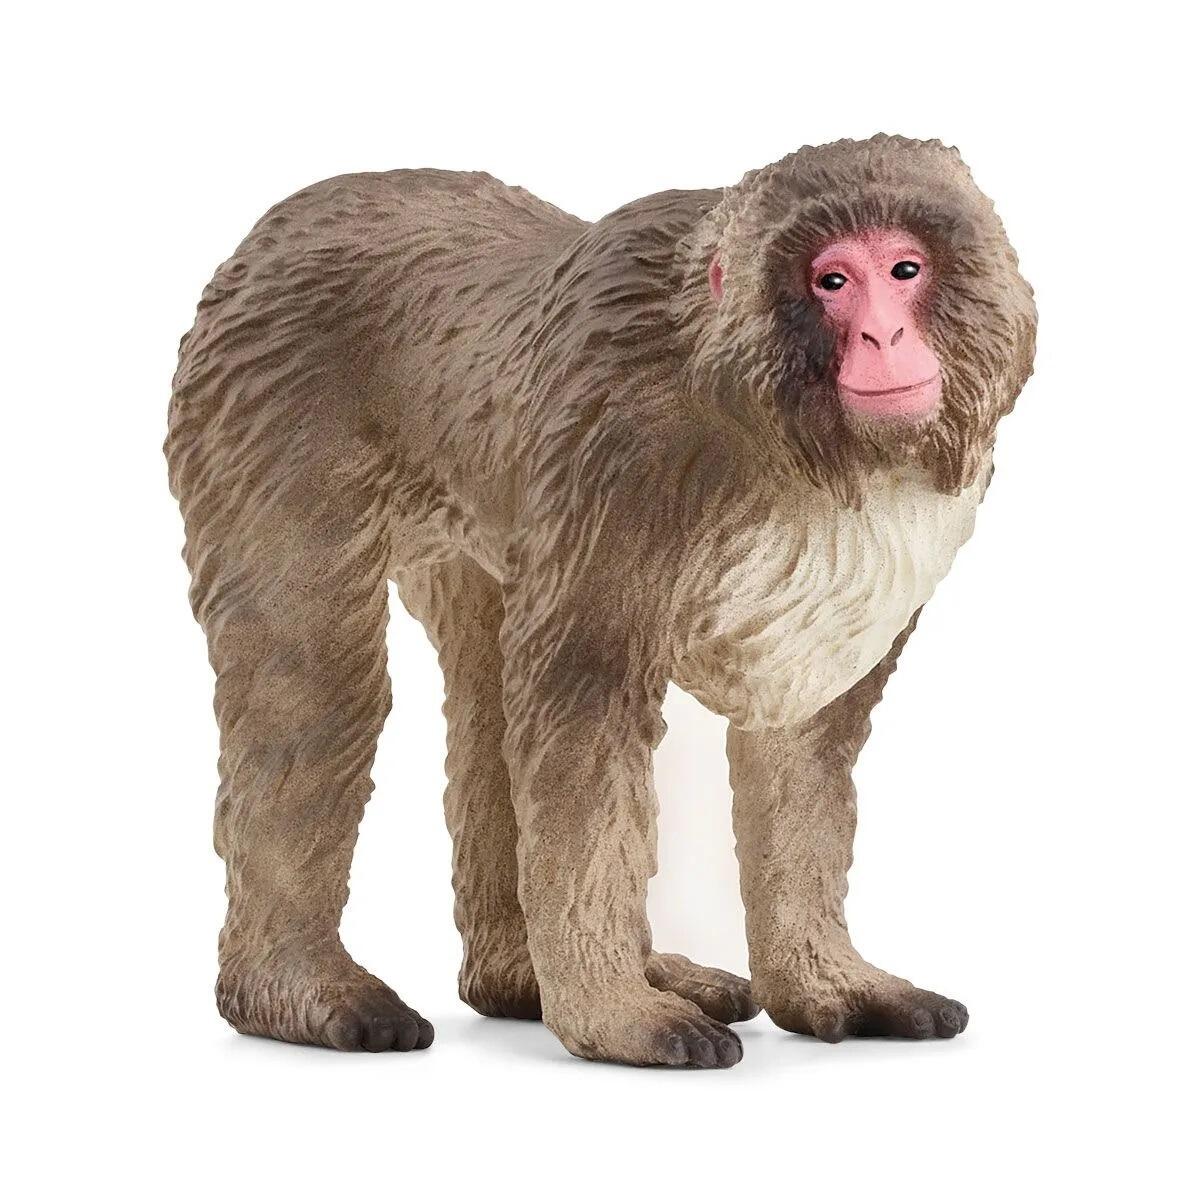 Schleich Wild Life Japanese Macaque Animal Figurine 14871